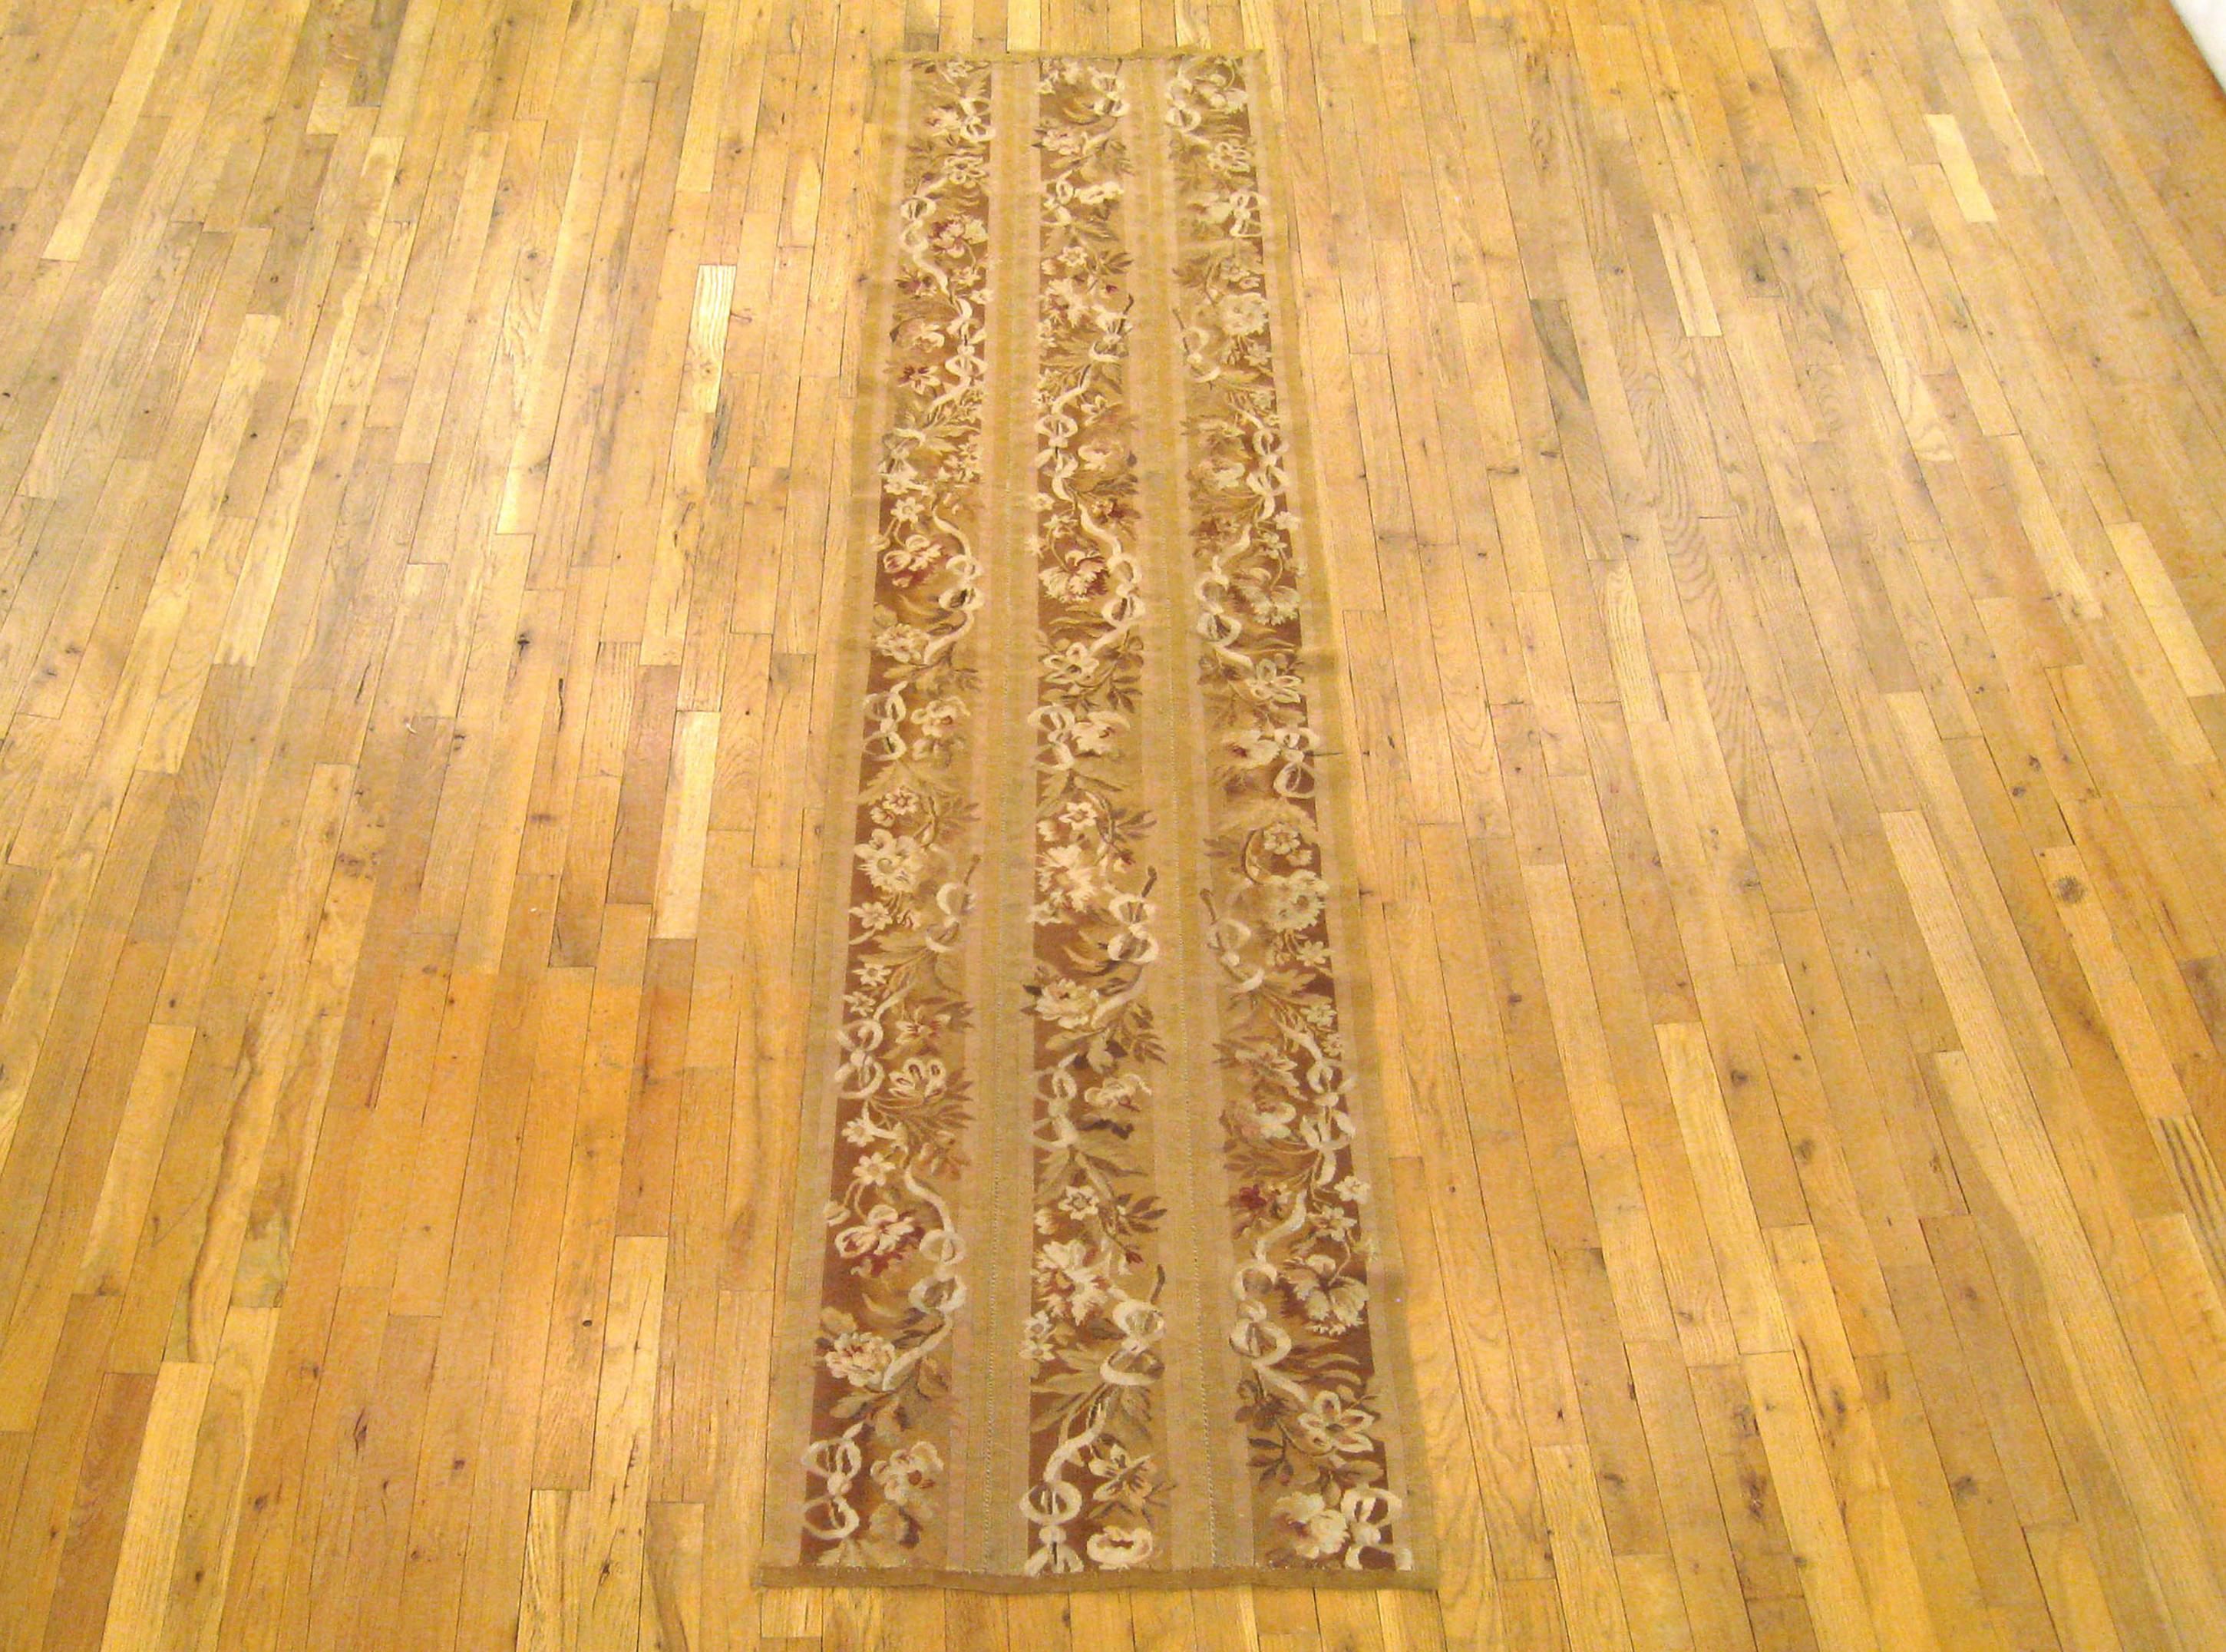 Antiker französischer Aubusson-Teppich, Läufergröße, um 1920

Ein einzigartiger antiker französischer Aubusson-Teppich, handgeknüpft mit weichem Wollflor. Dieser schöne, handgeknüpfte Wollteppich zeigt florale Elemente auf dem hellbraunen Grundfeld